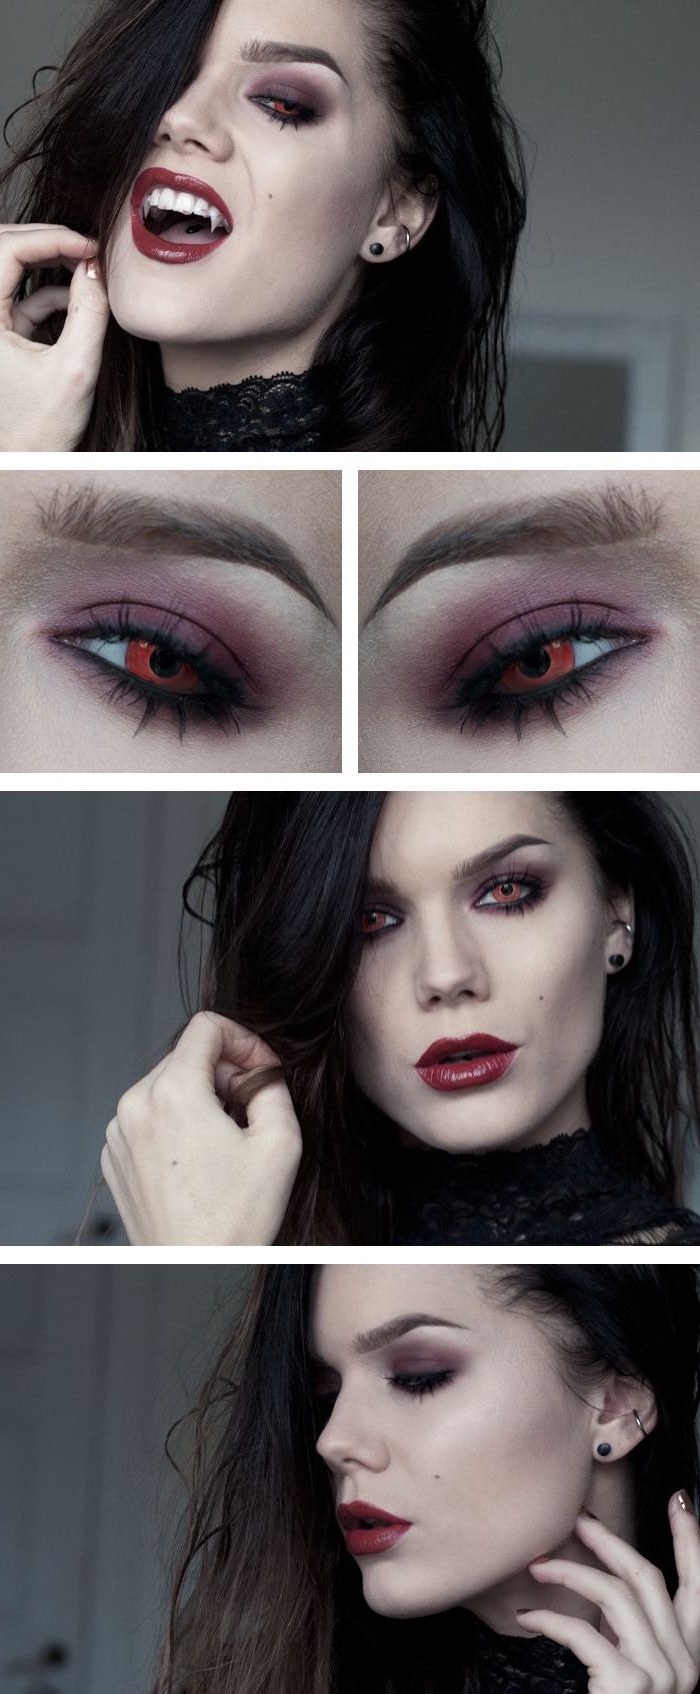 comment réaliser un maquillage halloween vampire, technique maquillage facile façon vampire avec bouche rouge et yeux sombres